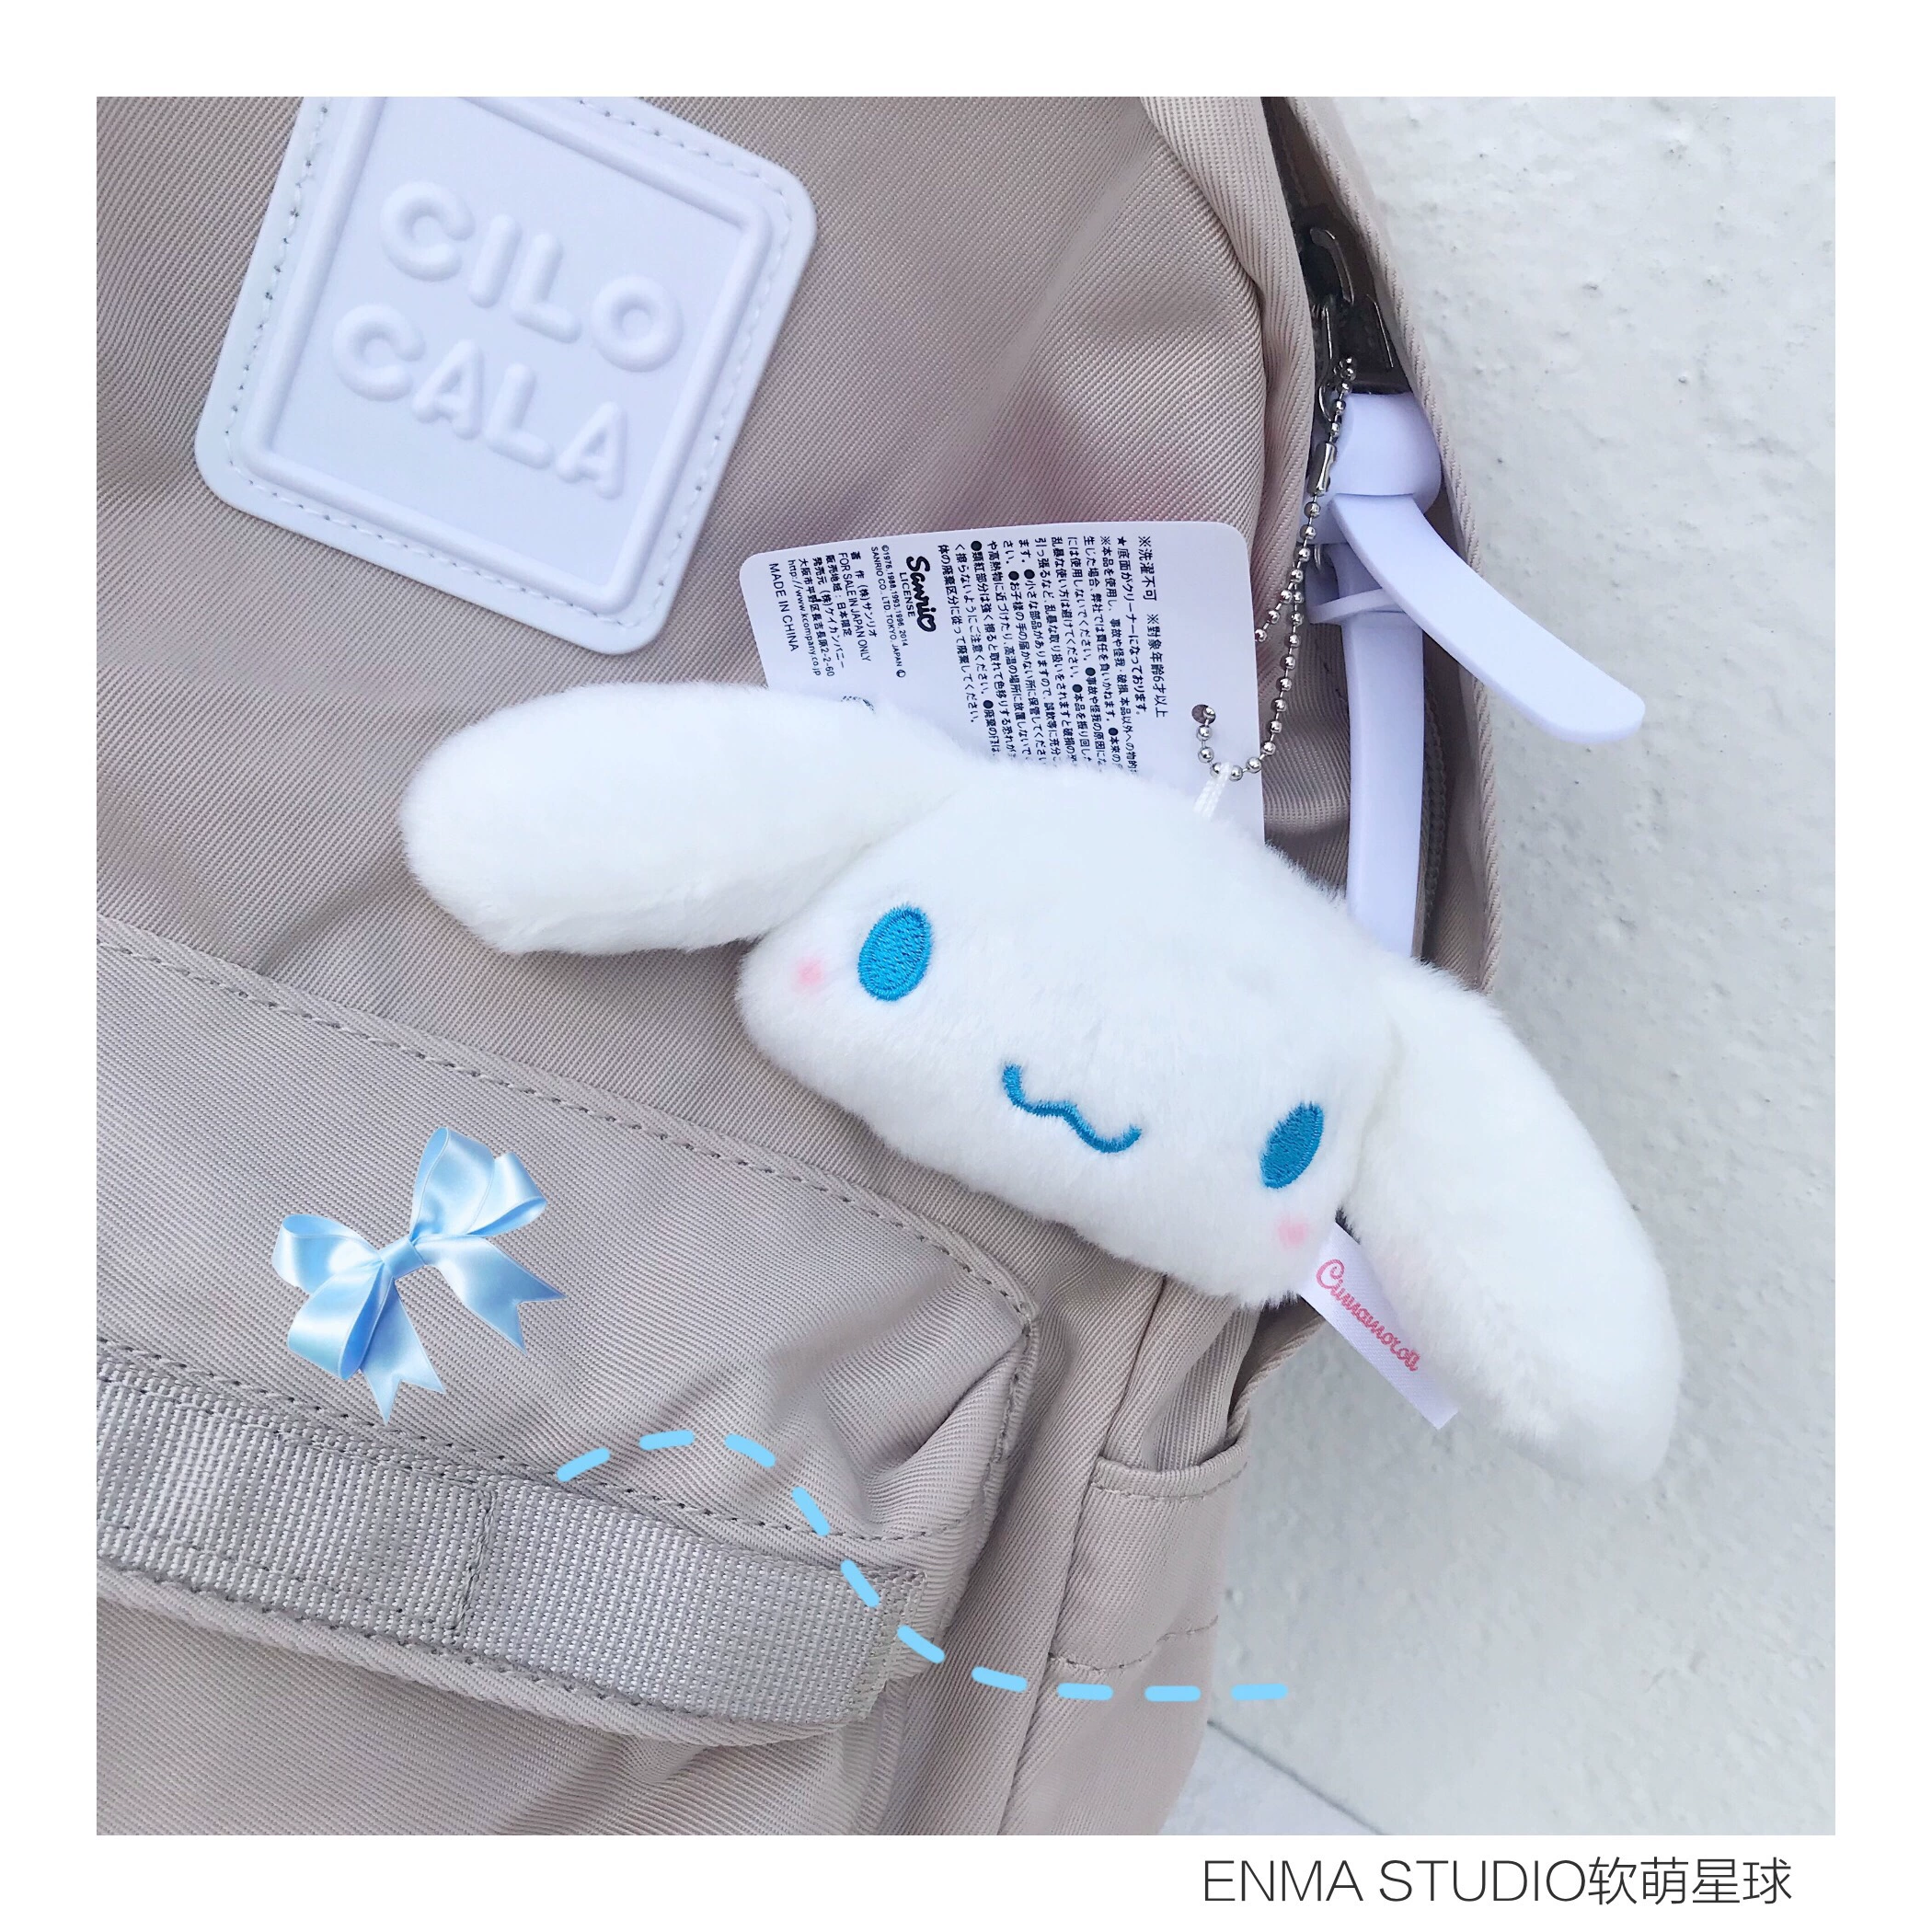 ENMA STUDIO Mặt dây chuyền hình con chó quế Trâm Nhật Bản và Hàn Quốc Big Eared Dog Plush Doll Girl Heart Bag Charm Meng - Trâm cài